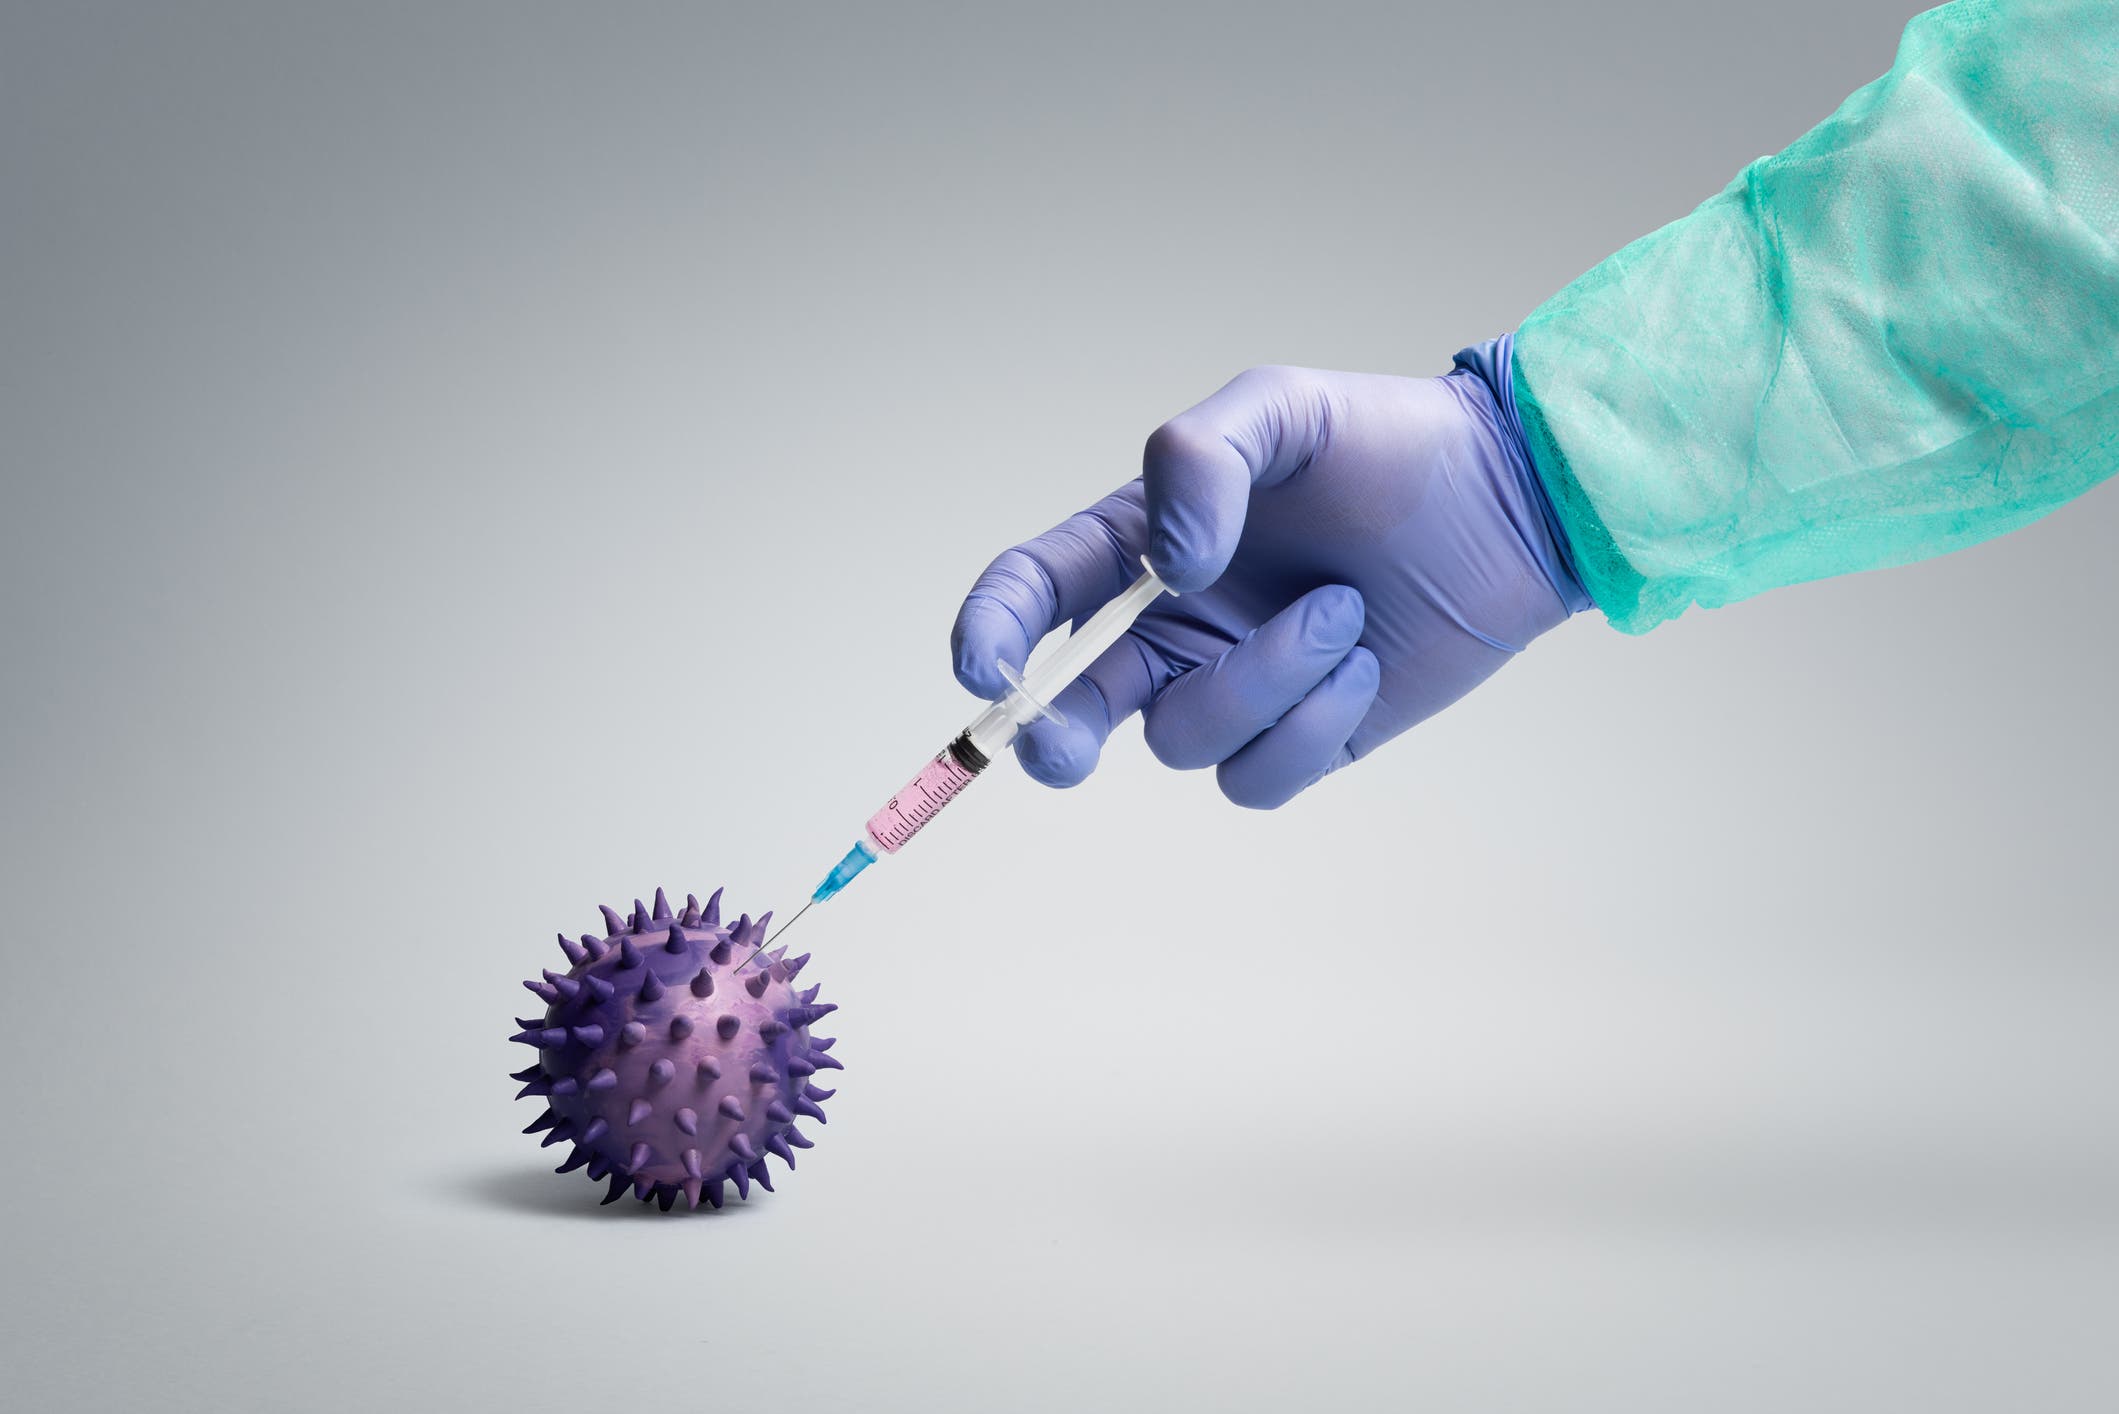 العالم يترقب إنفلونزا جديدة والصحة العالمية: احذروا! 9c9f77f8-b182-49ae-b90c-6c17f4564179